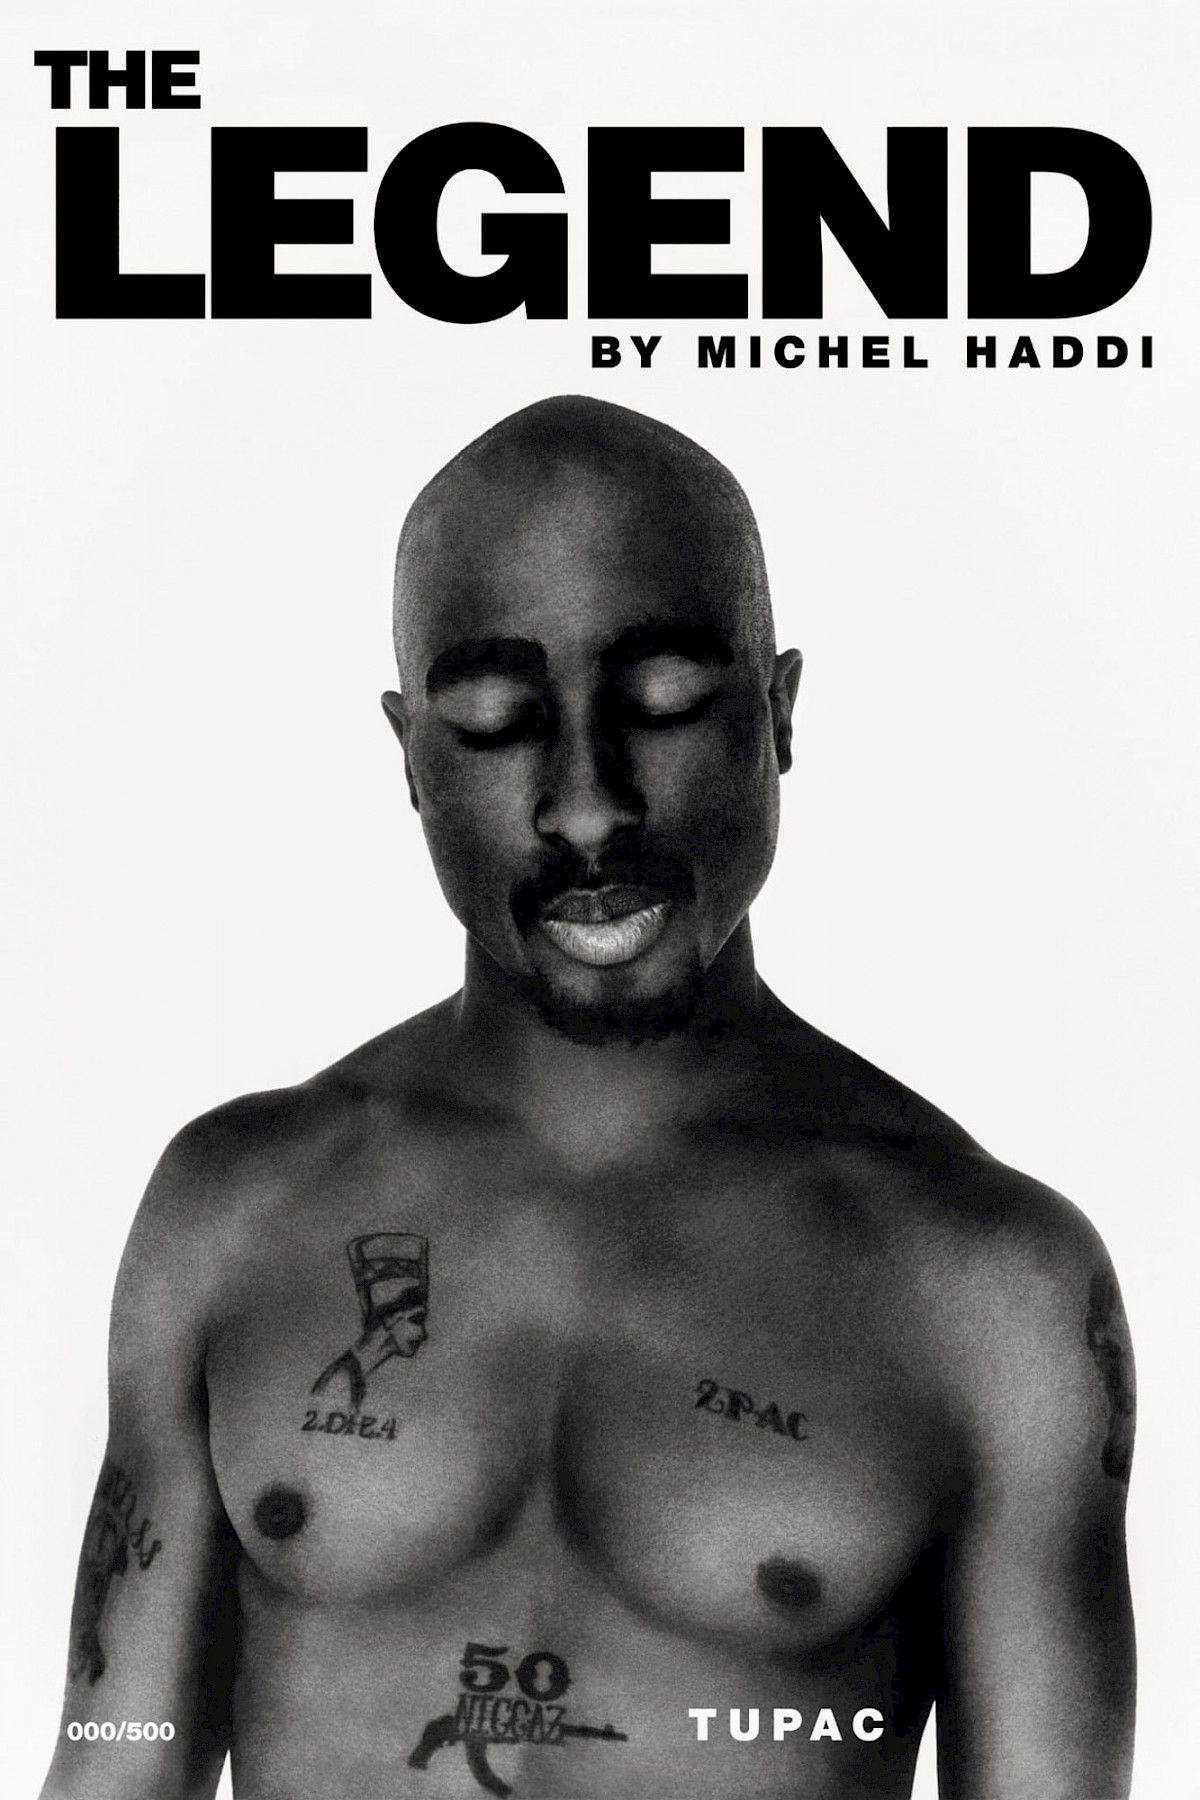 The Legend - Tupac by Michel Haddi